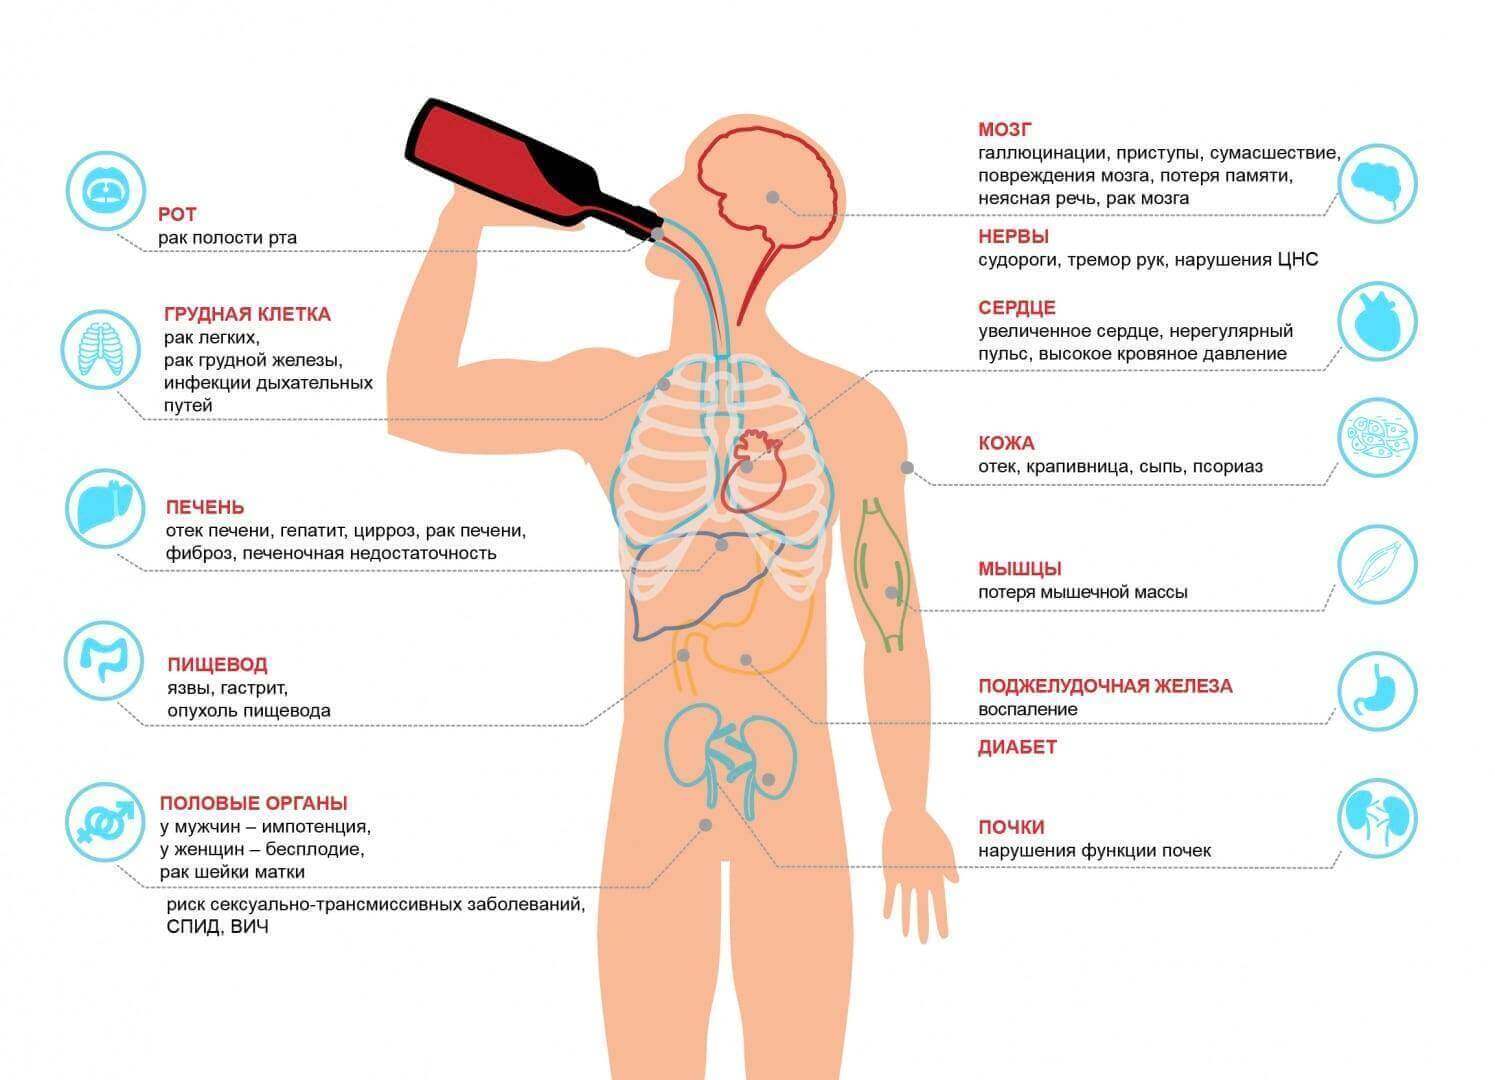 Поражение желез. Влияние алкоголя на организм человека схема. Влияние алкоголя на органы. Воздействие алкоголя на организм. Алкоголизм влияние на органы.